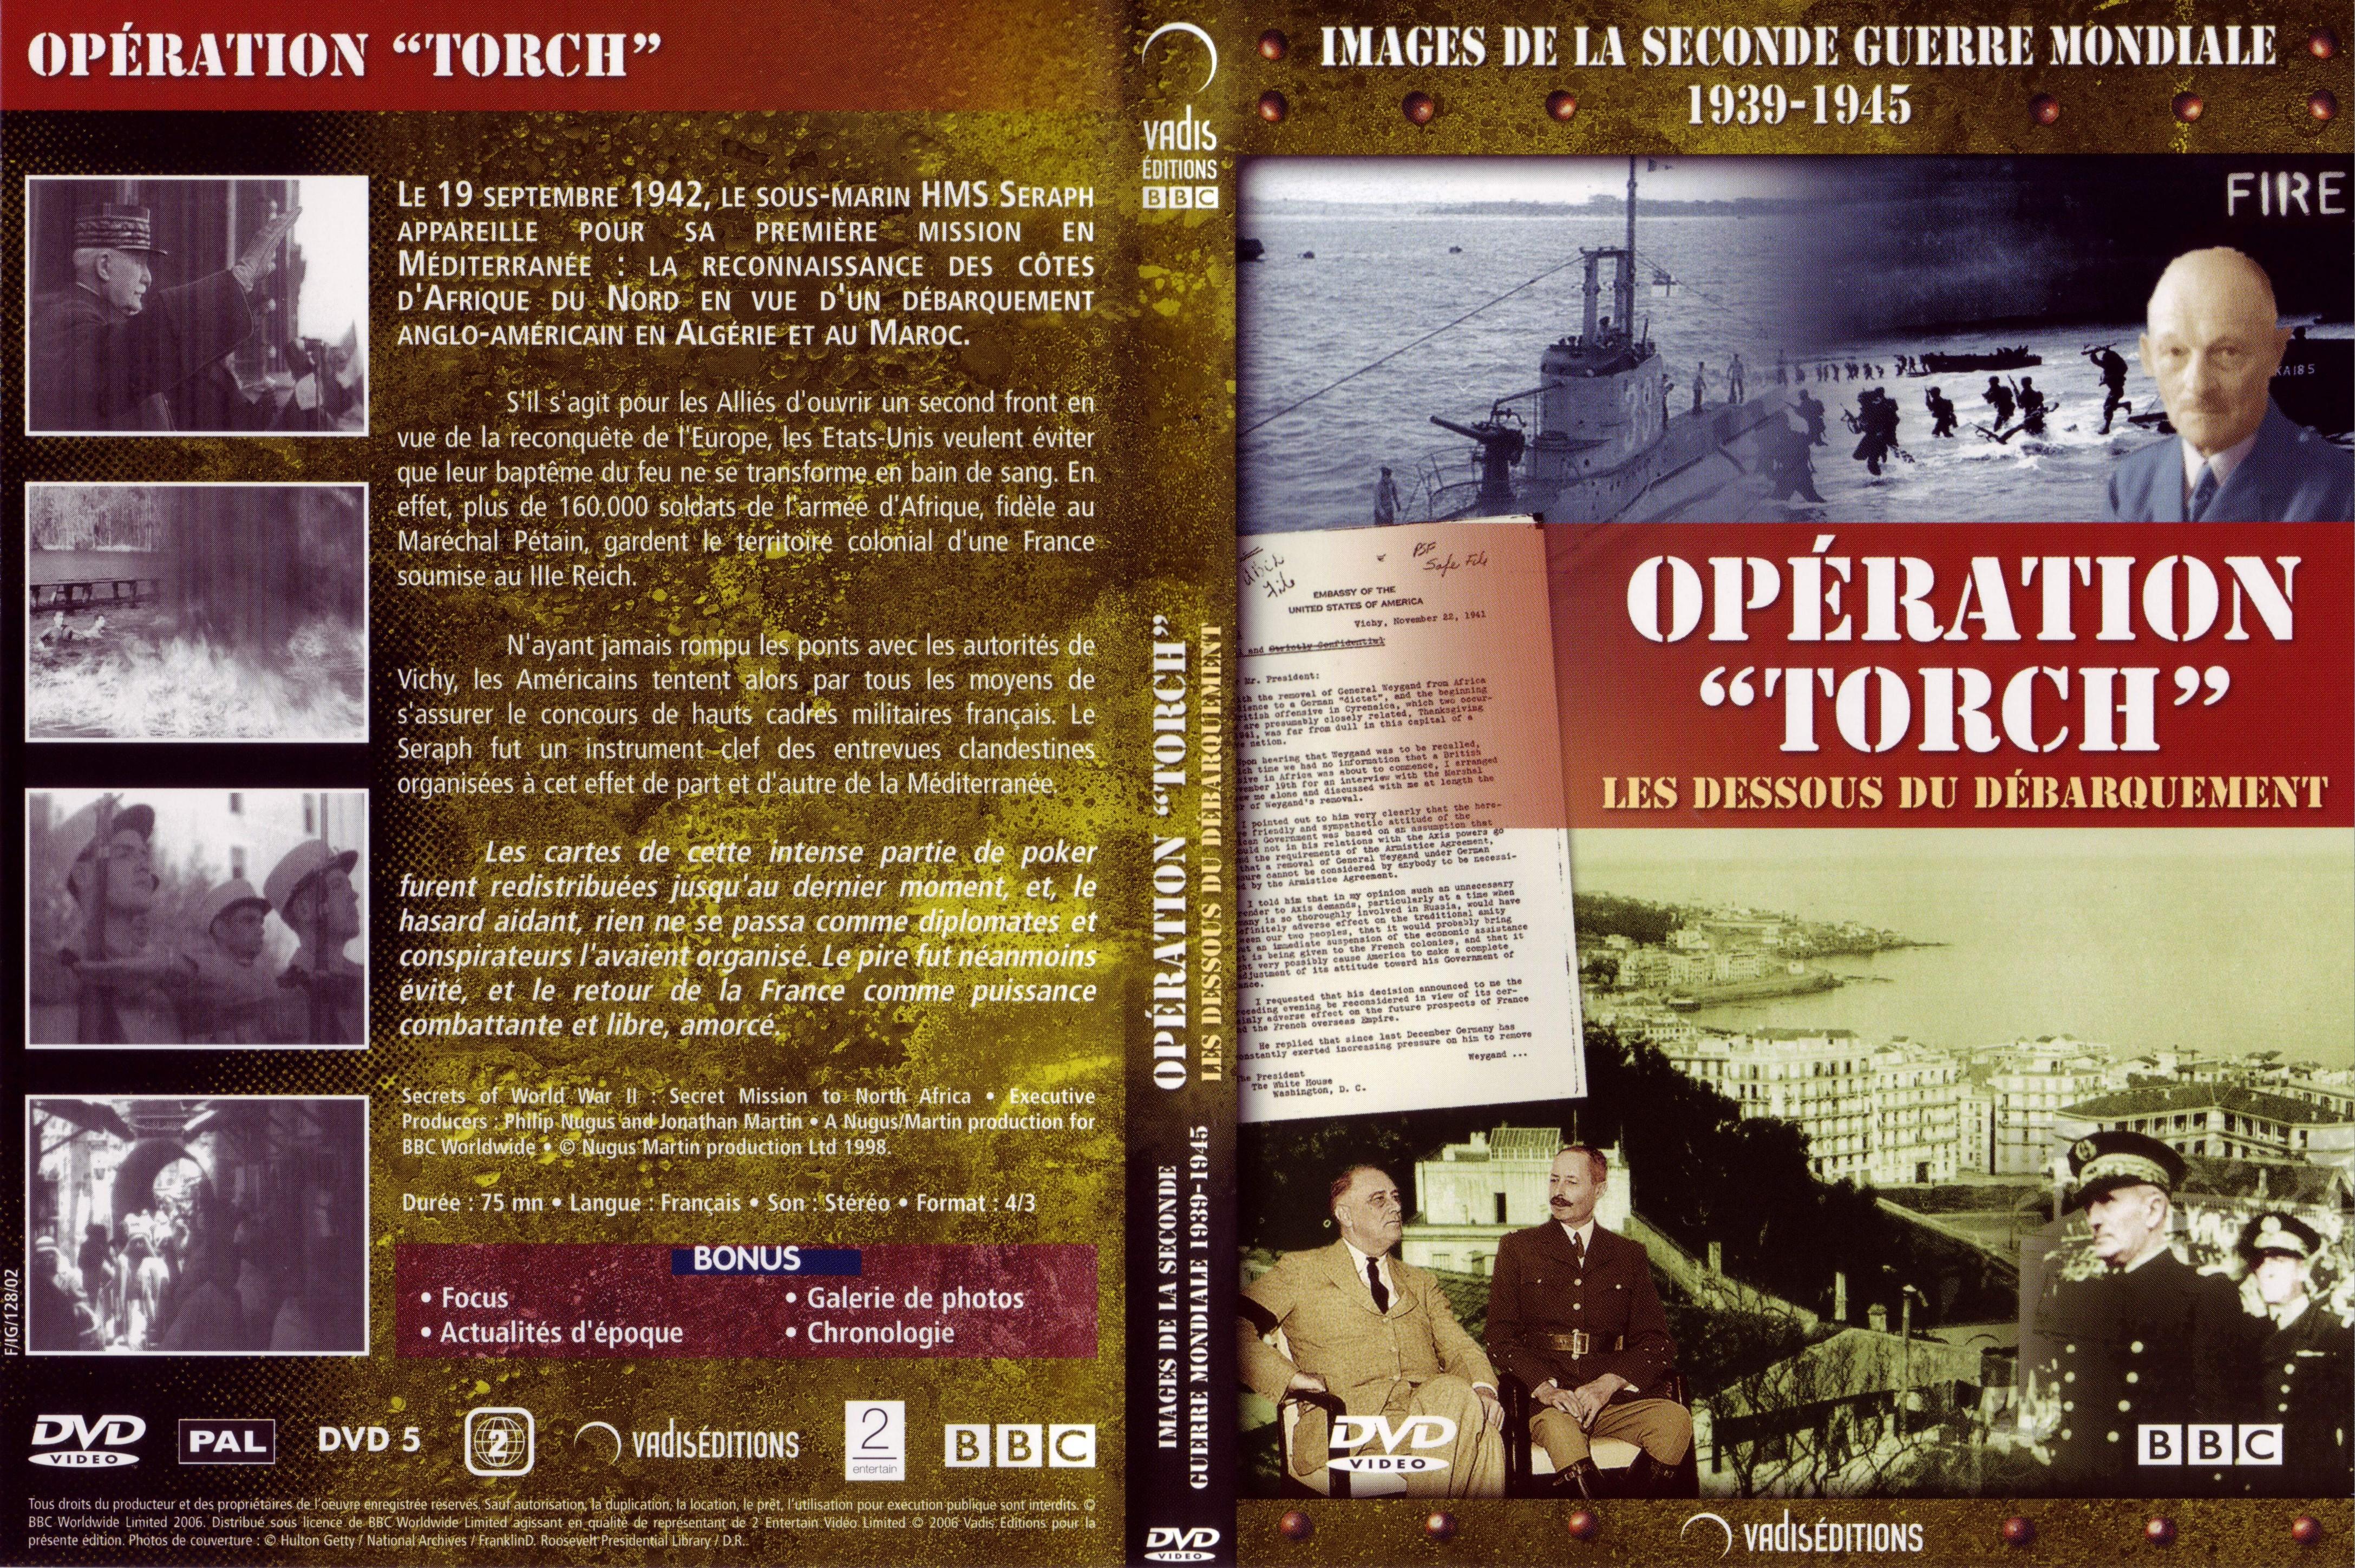 Jaquette DVD Images de la seconde guerre mondiale - Opration Torch